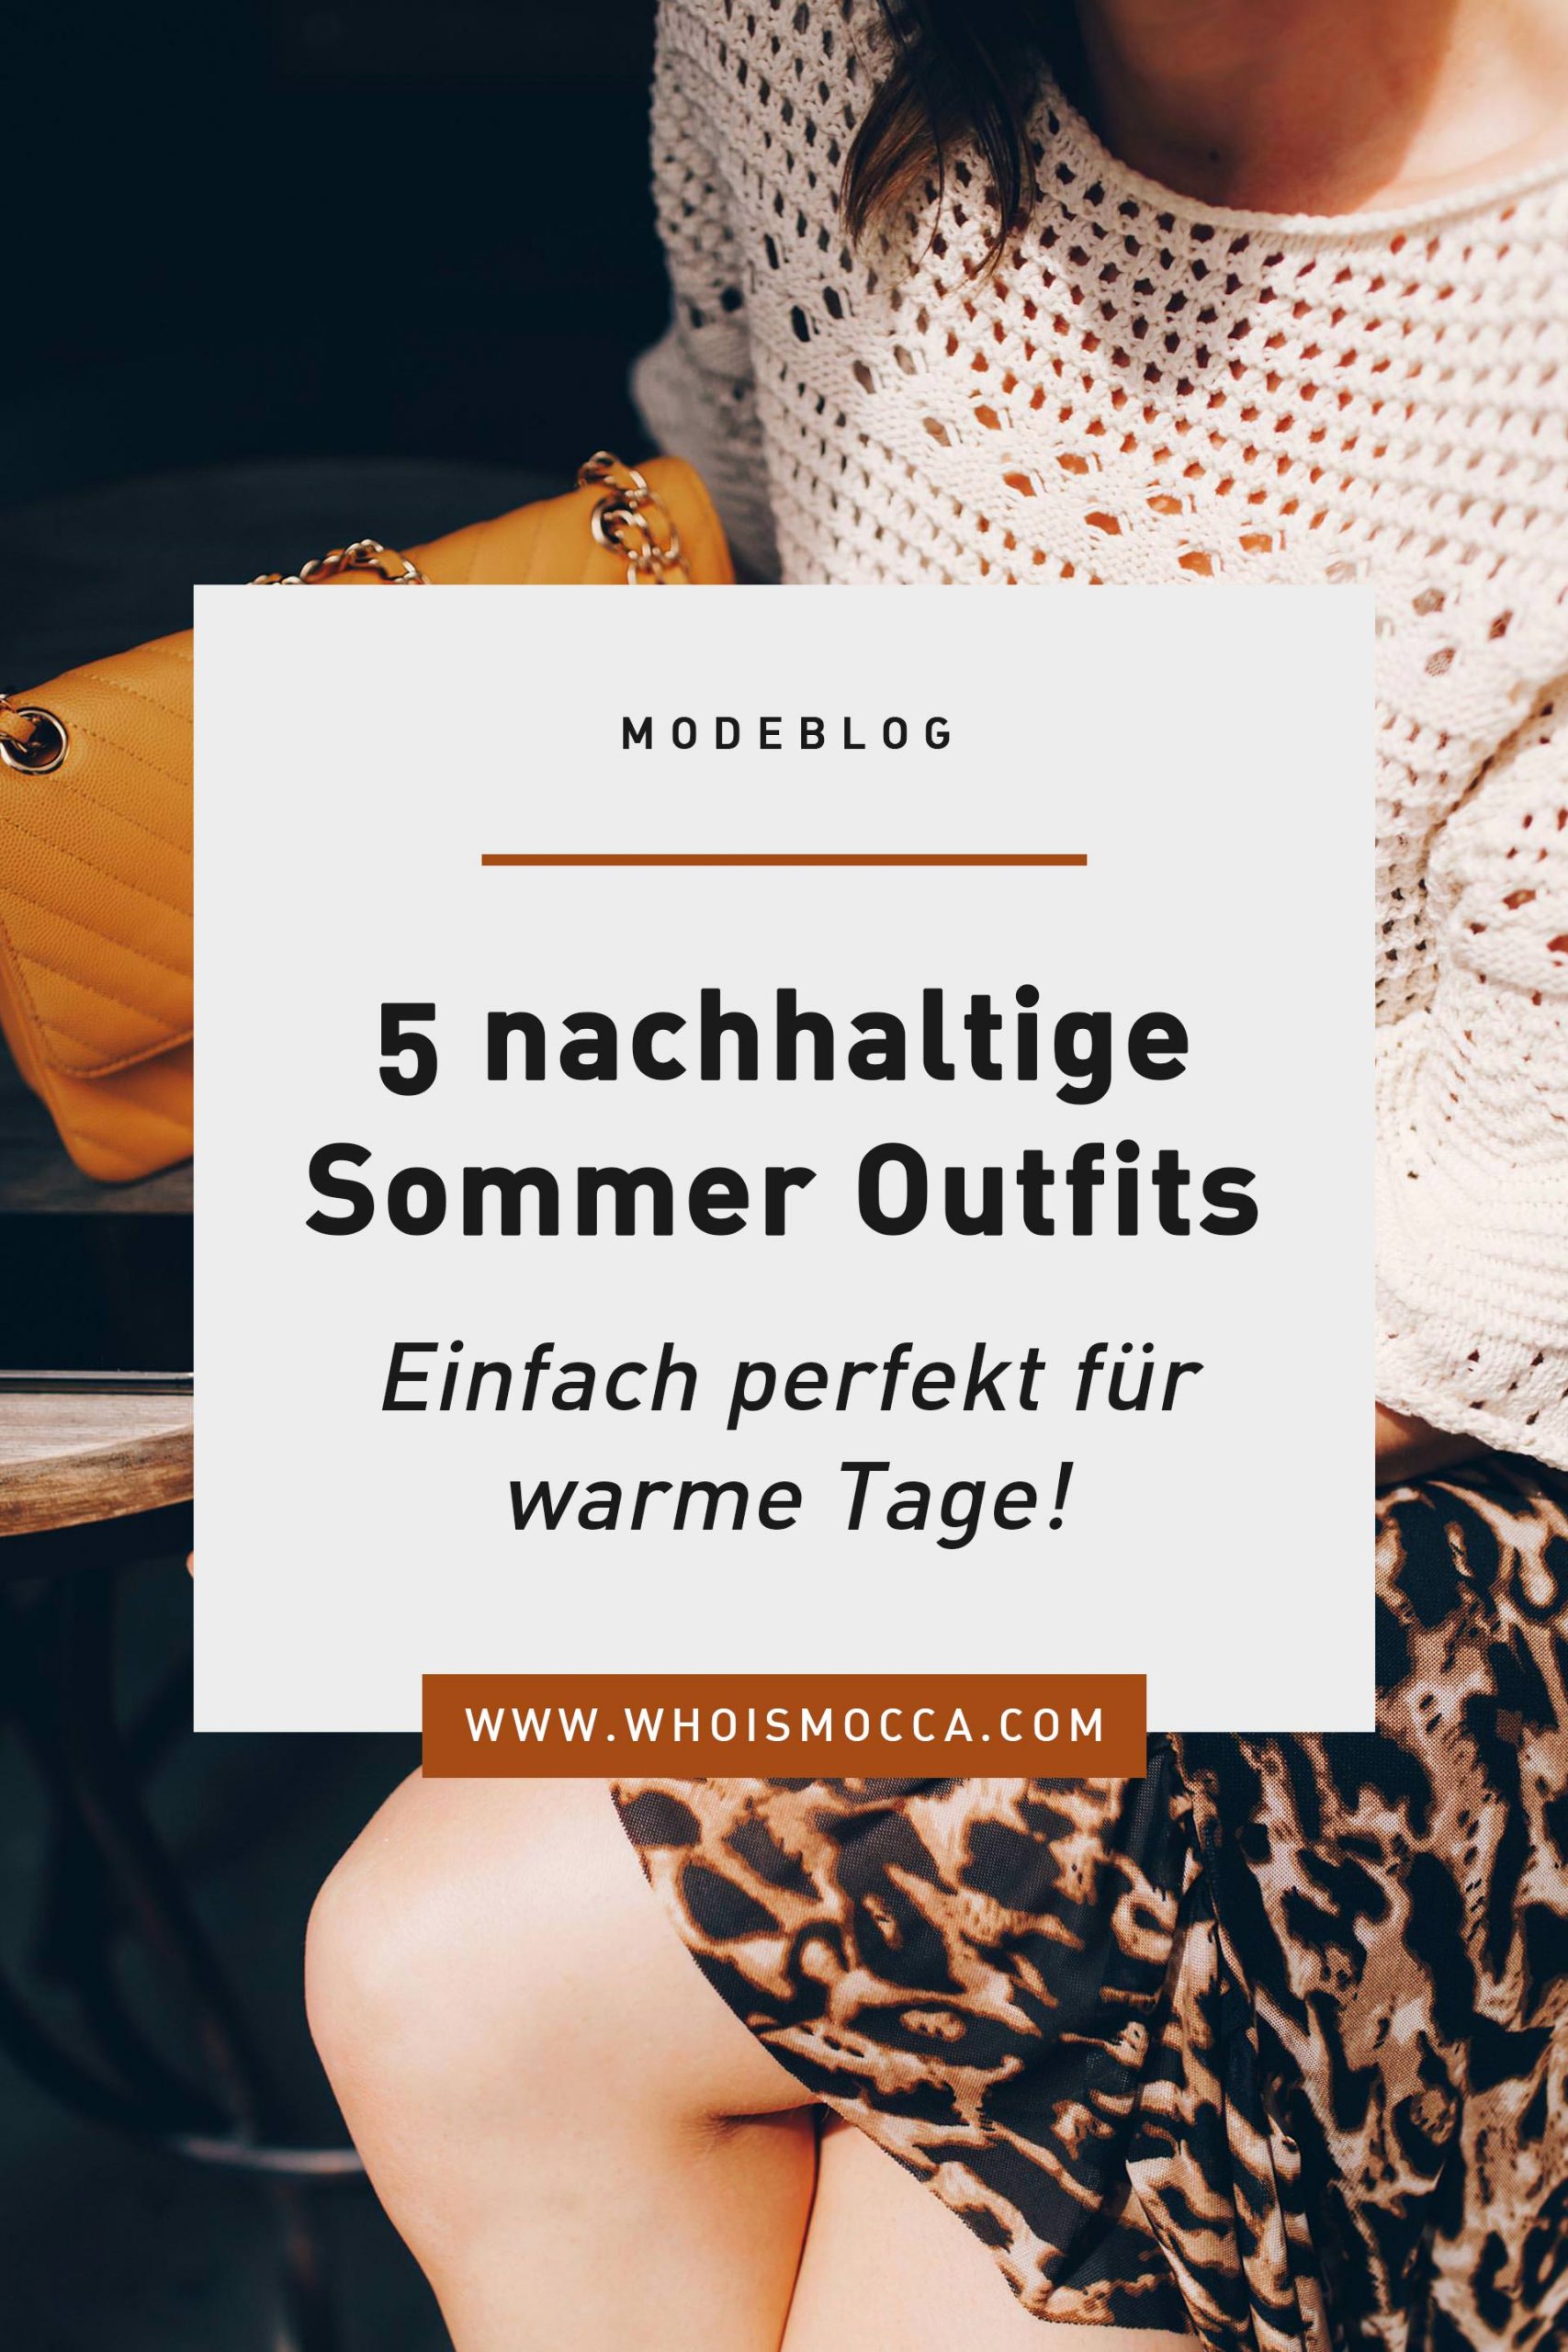 5 schöne und bequeme sowie nachhaltige Sommer Outfits habe ich dir am Modeblog zusammengestellt. Welches gefällt dir am besten und würdest du tragen? www.whoismocca.com